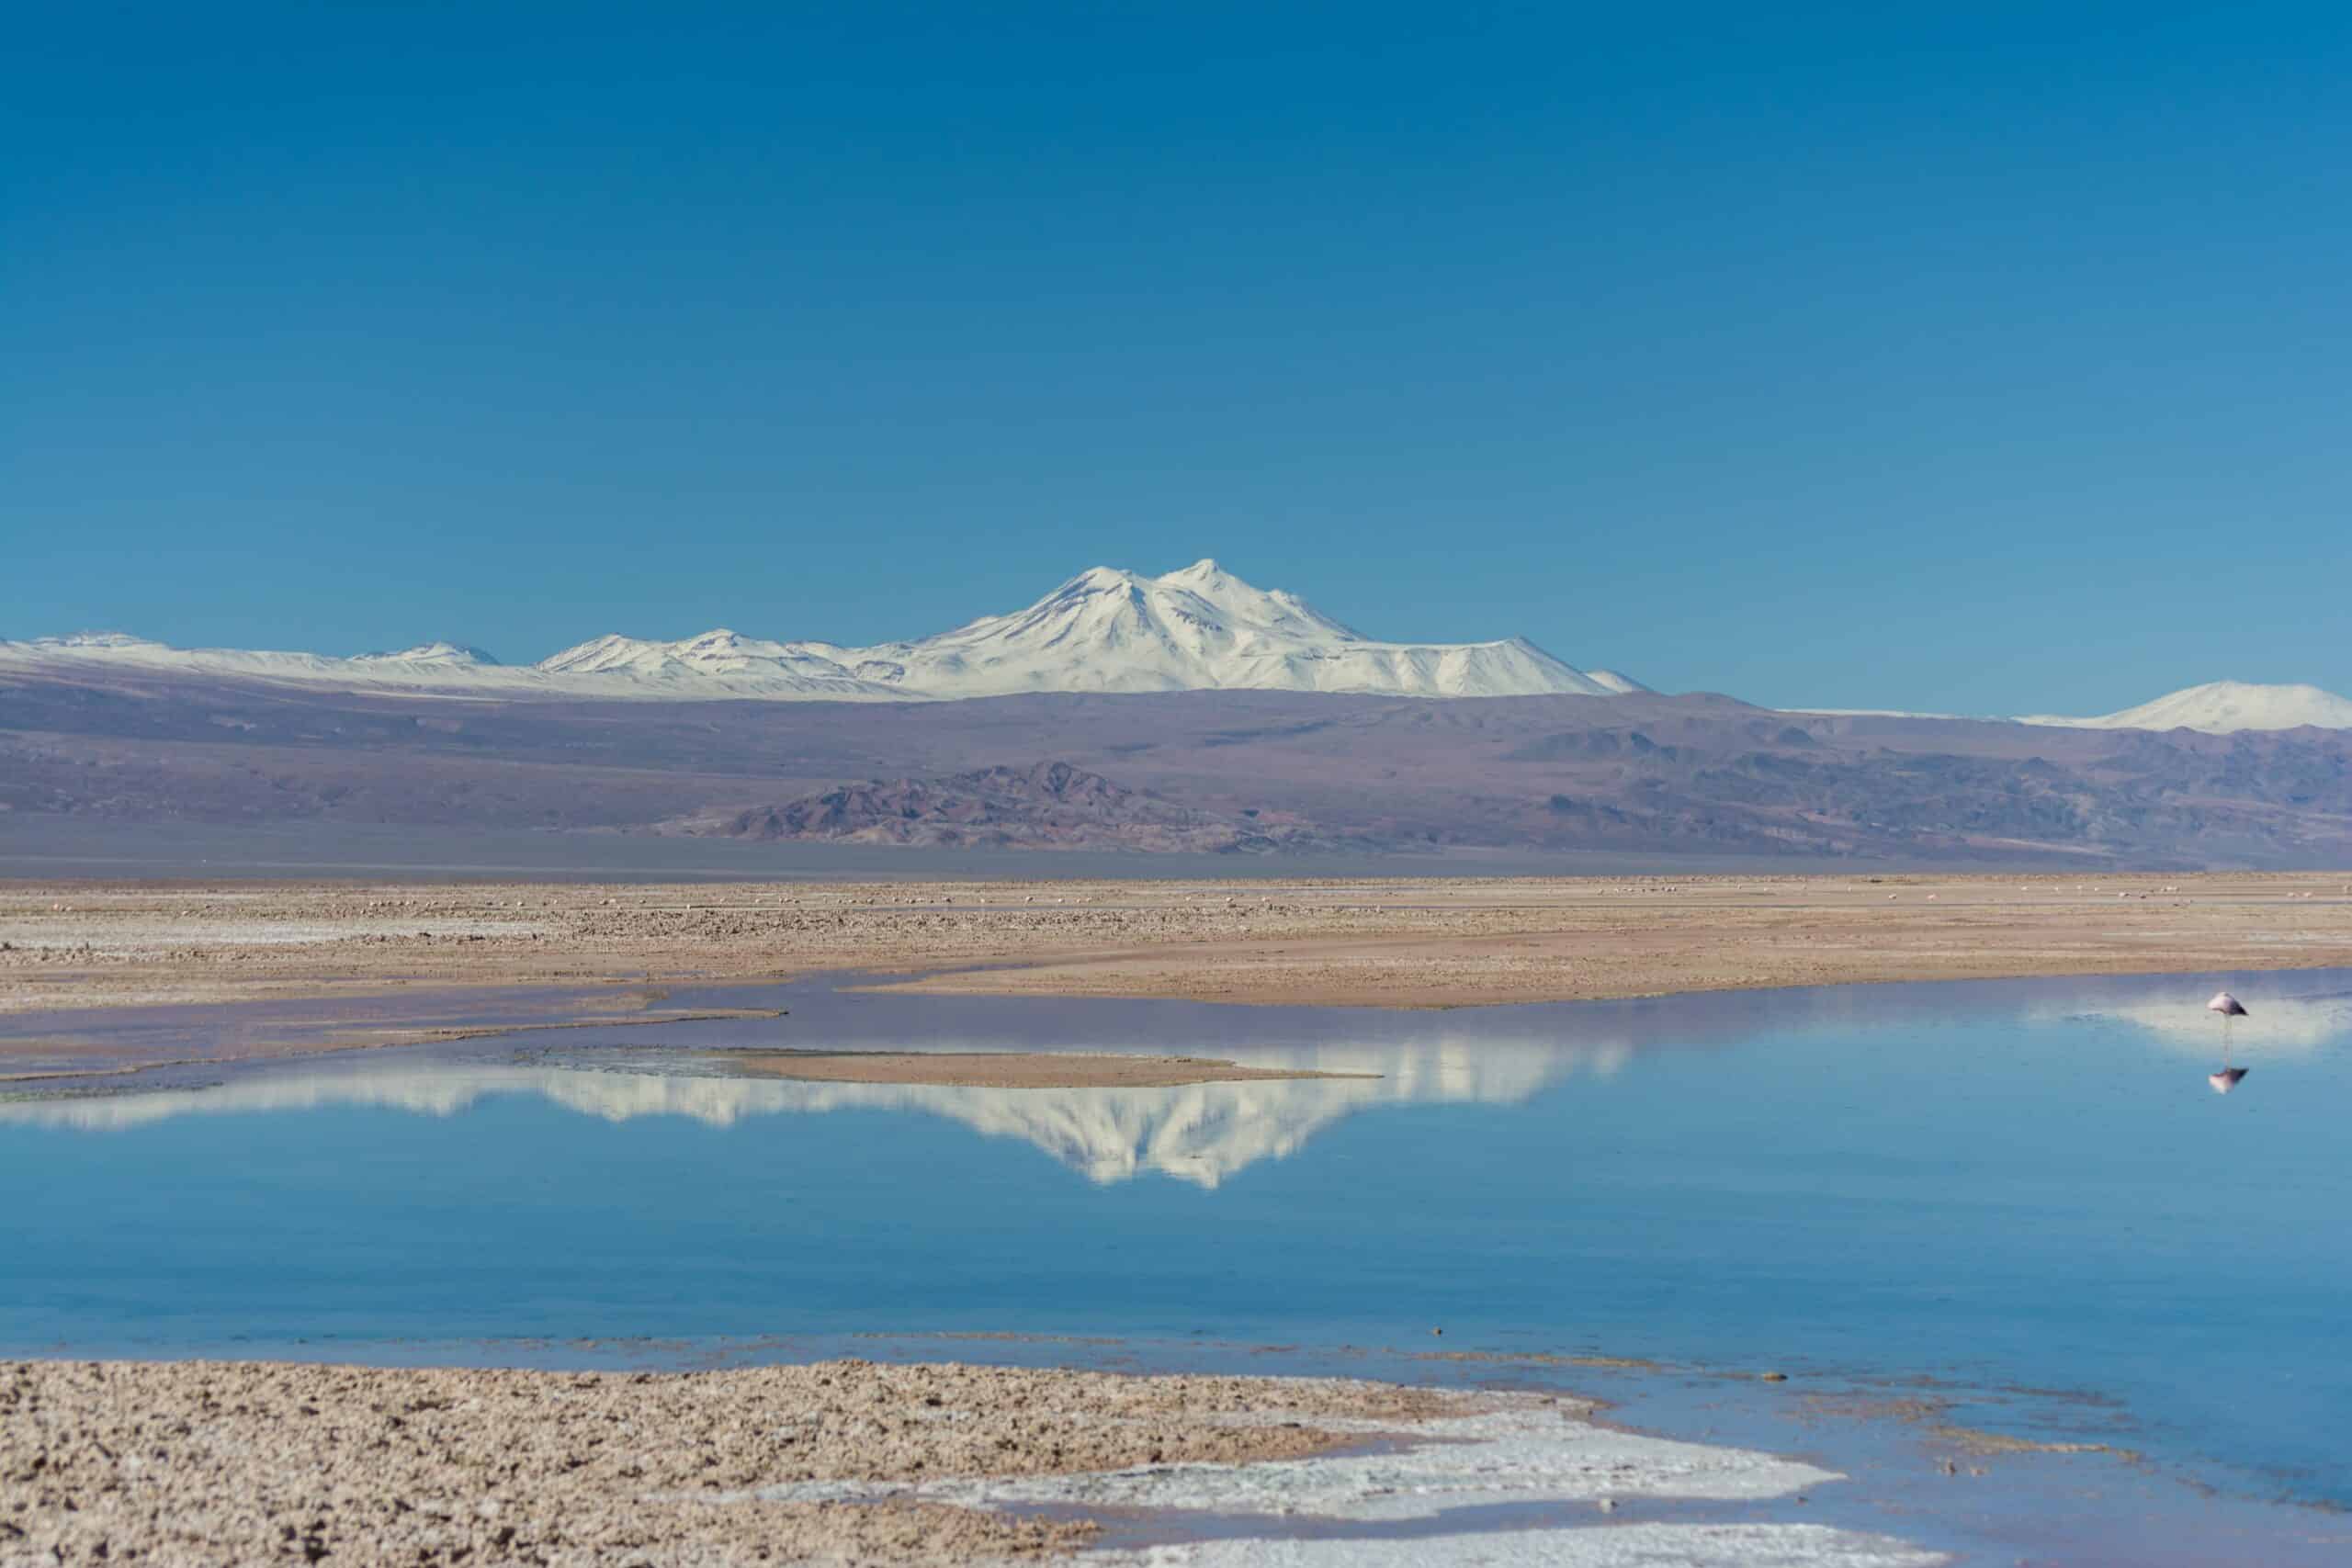 Vista do Salar de Atacama, Chile, durante o dia com montanhas ao fundo coberta de neve e lago à frente. Representa chip celular Atacama.